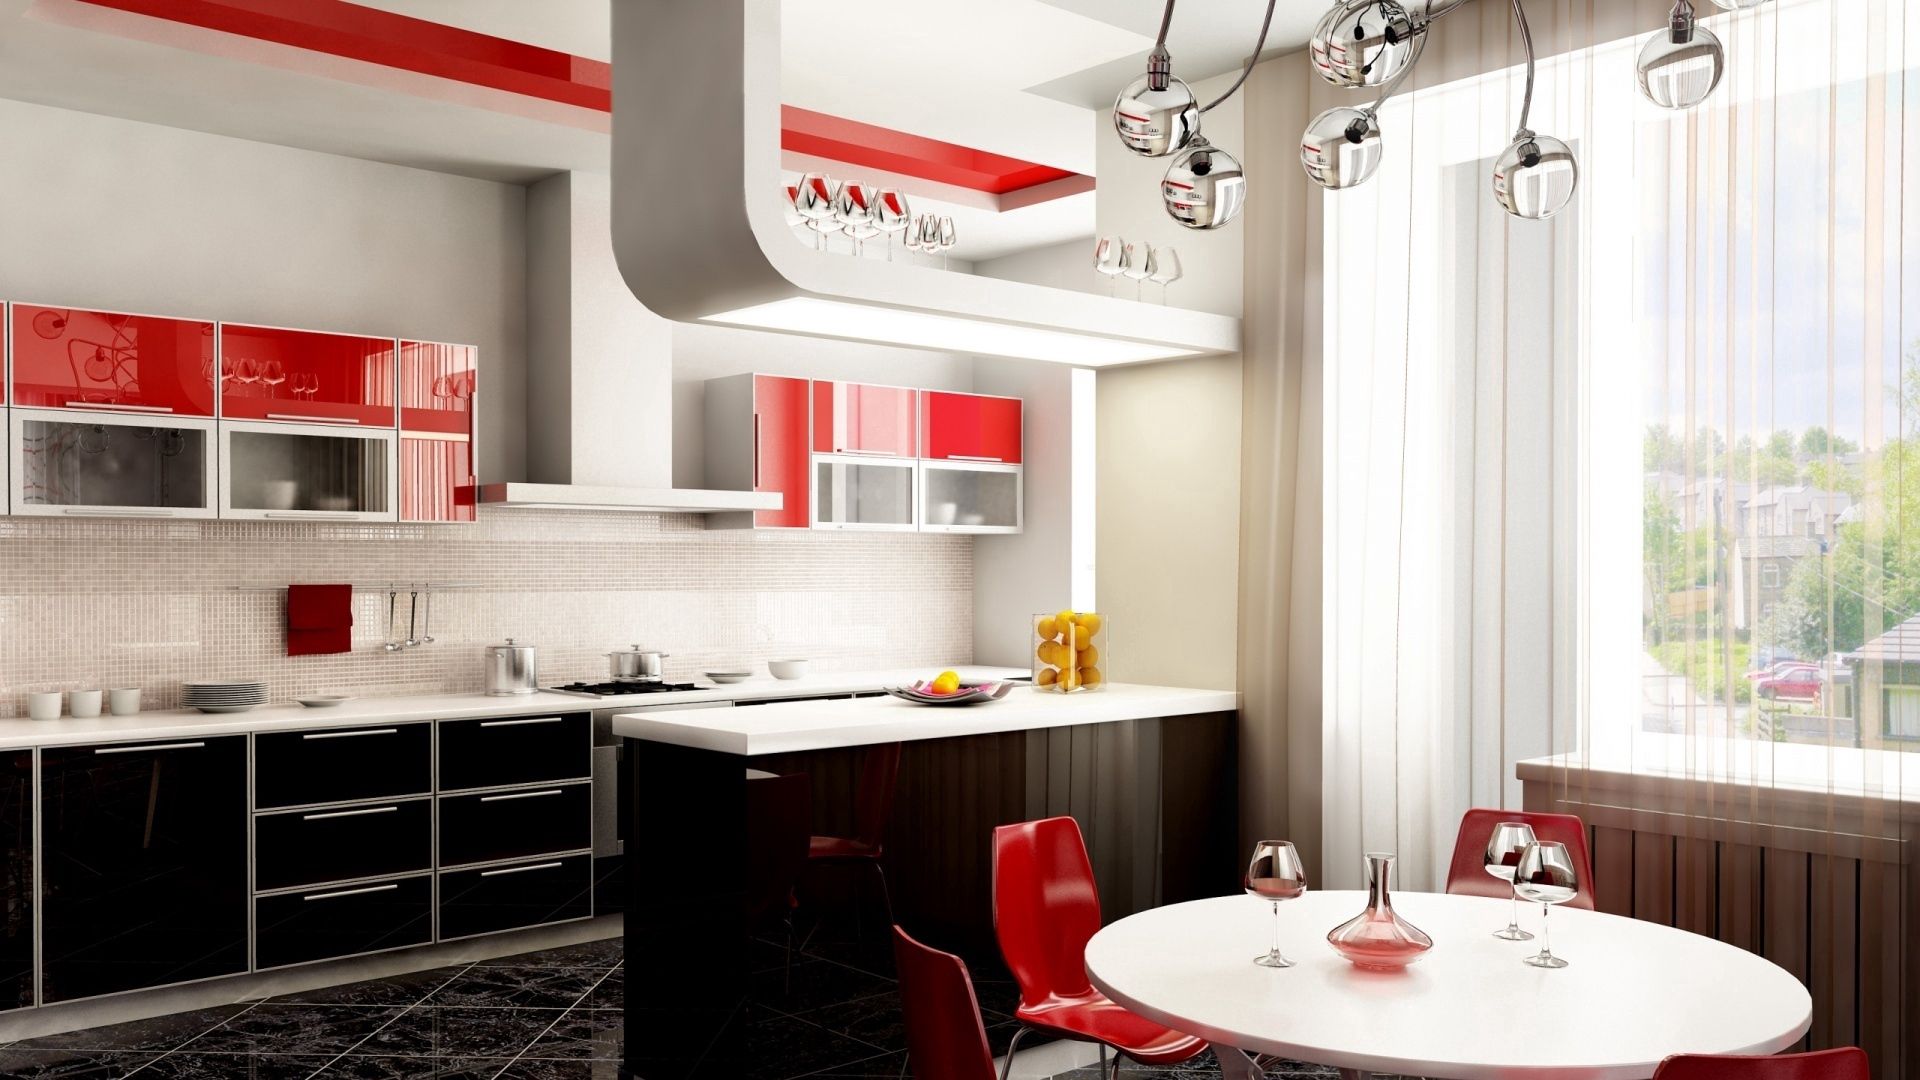 Качественные кухни рейтинг. Интерьер кухни. Красивые современные кухни. Красно-черная кухня в интерьере. Красивые кухни в квартирах.